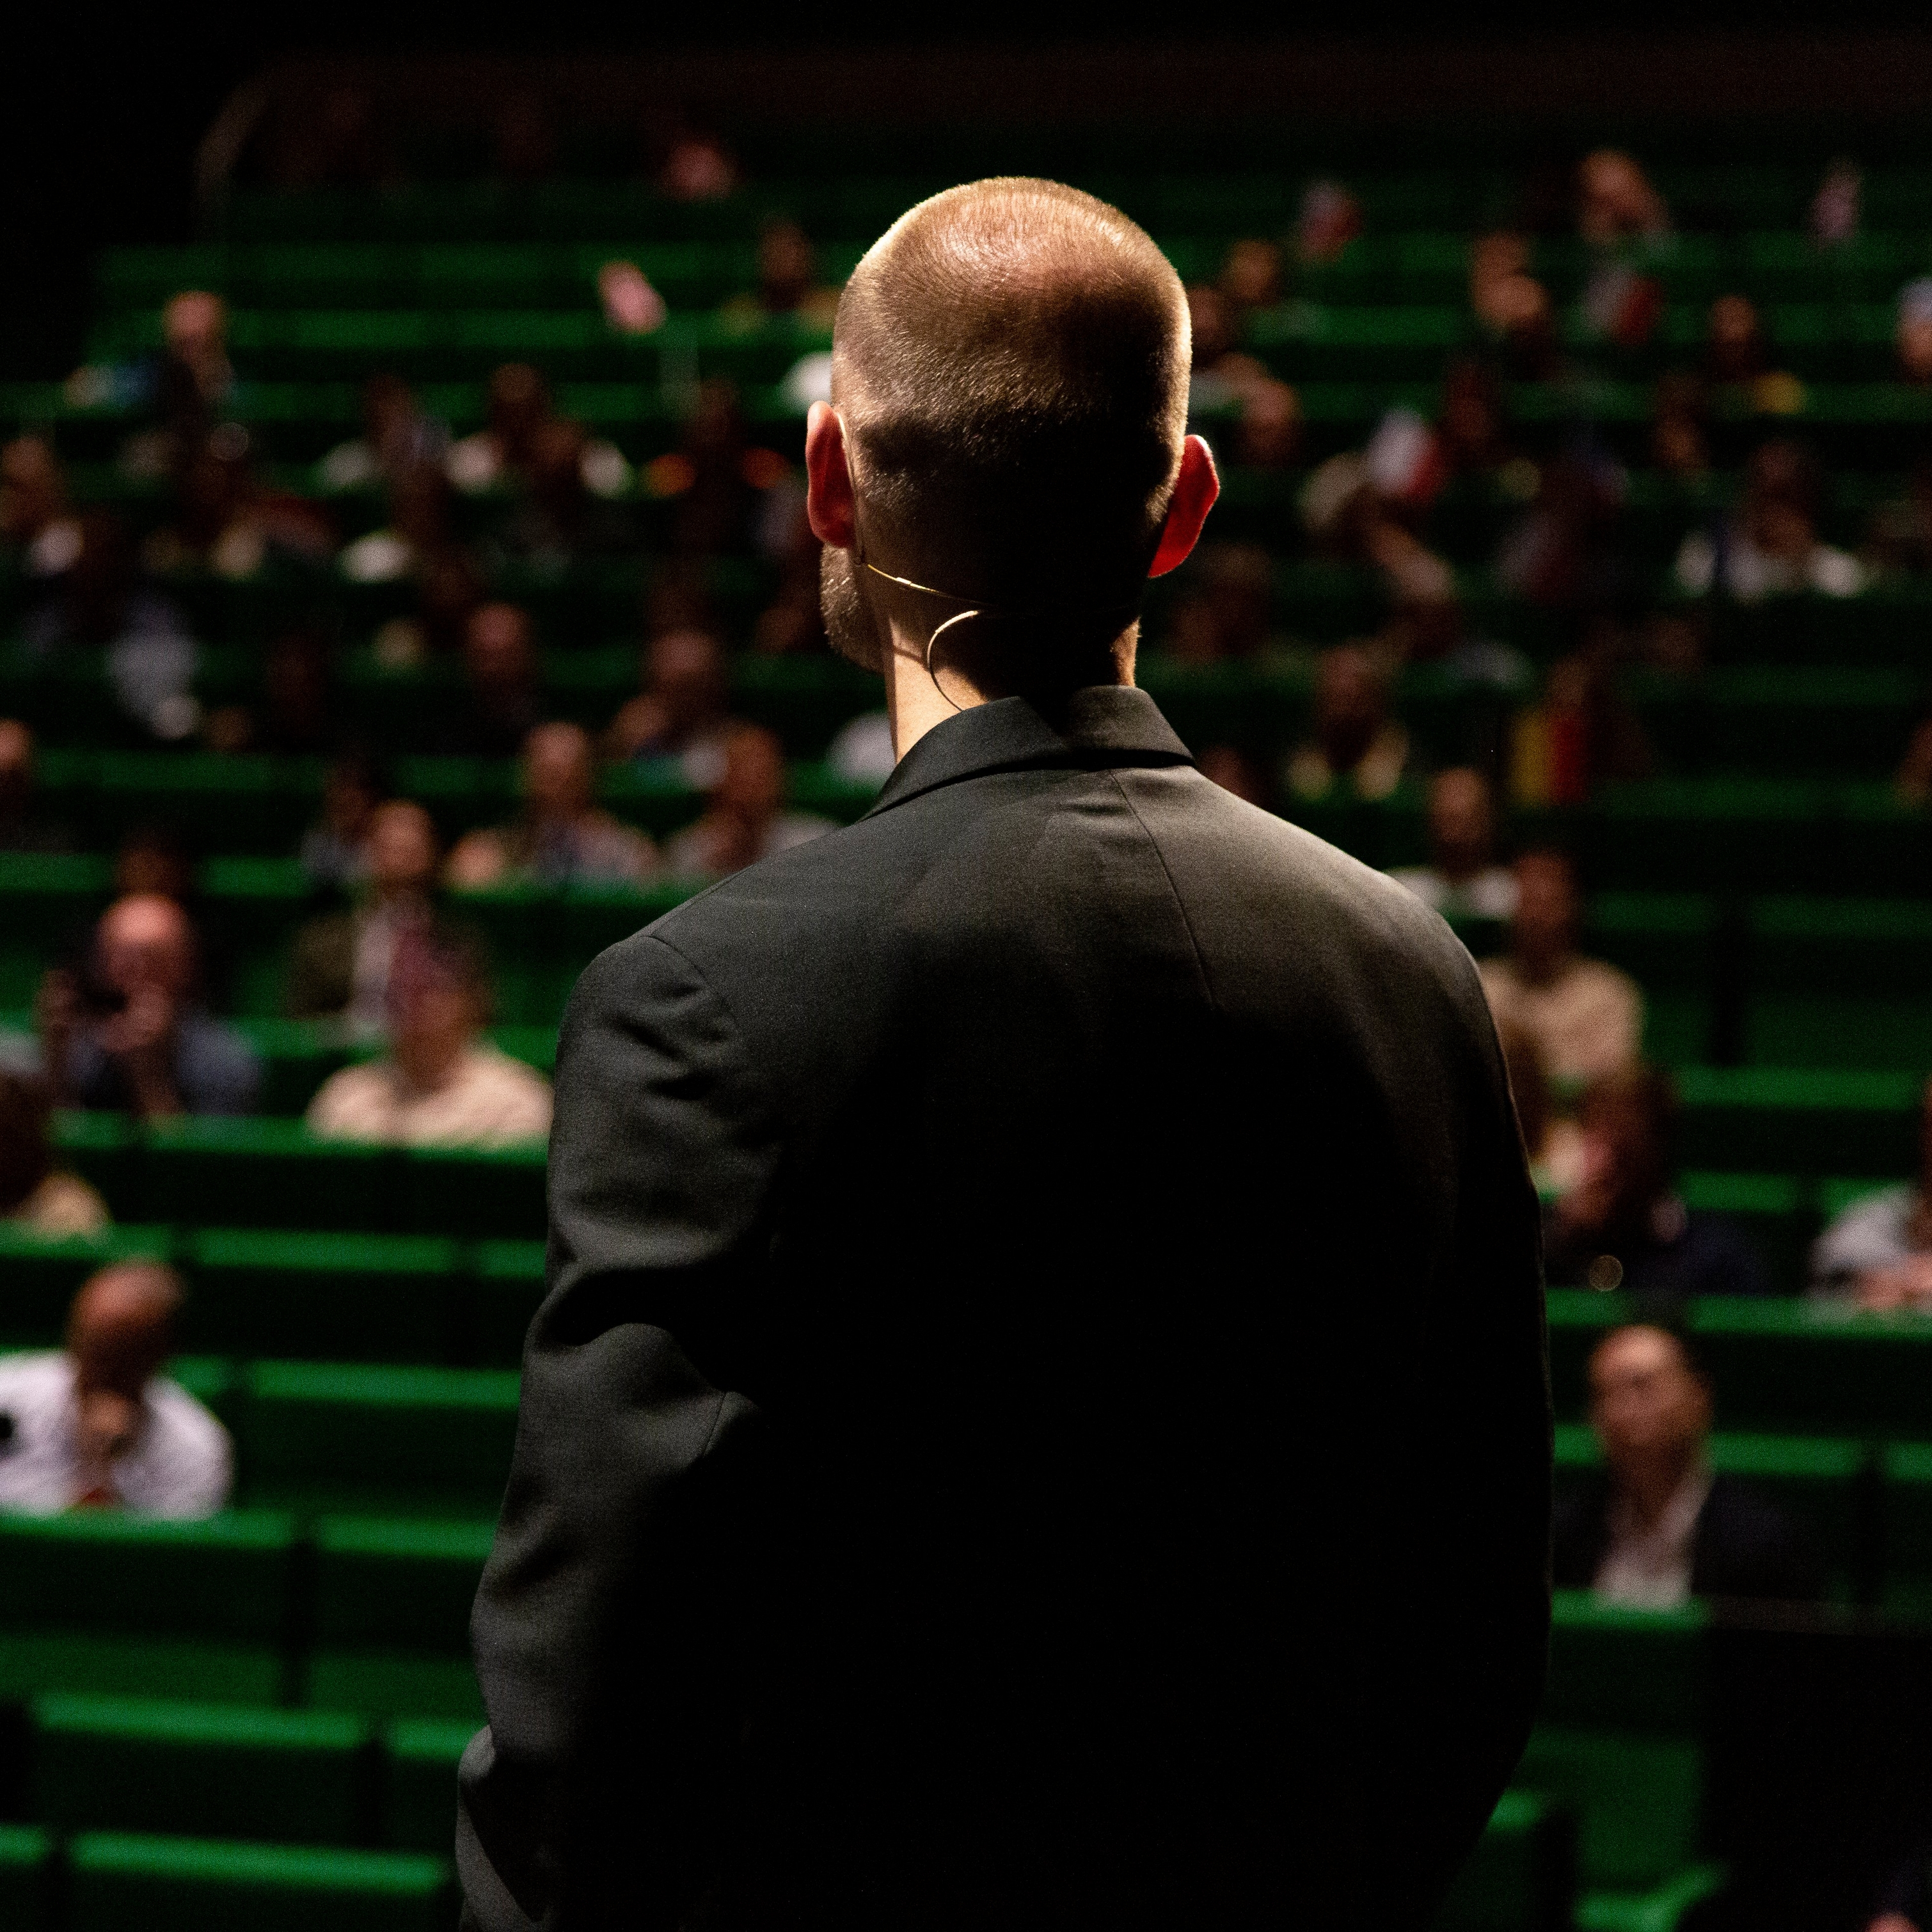 Muž v černém obleku stojí před publikem v sále se zelenými sedadly.